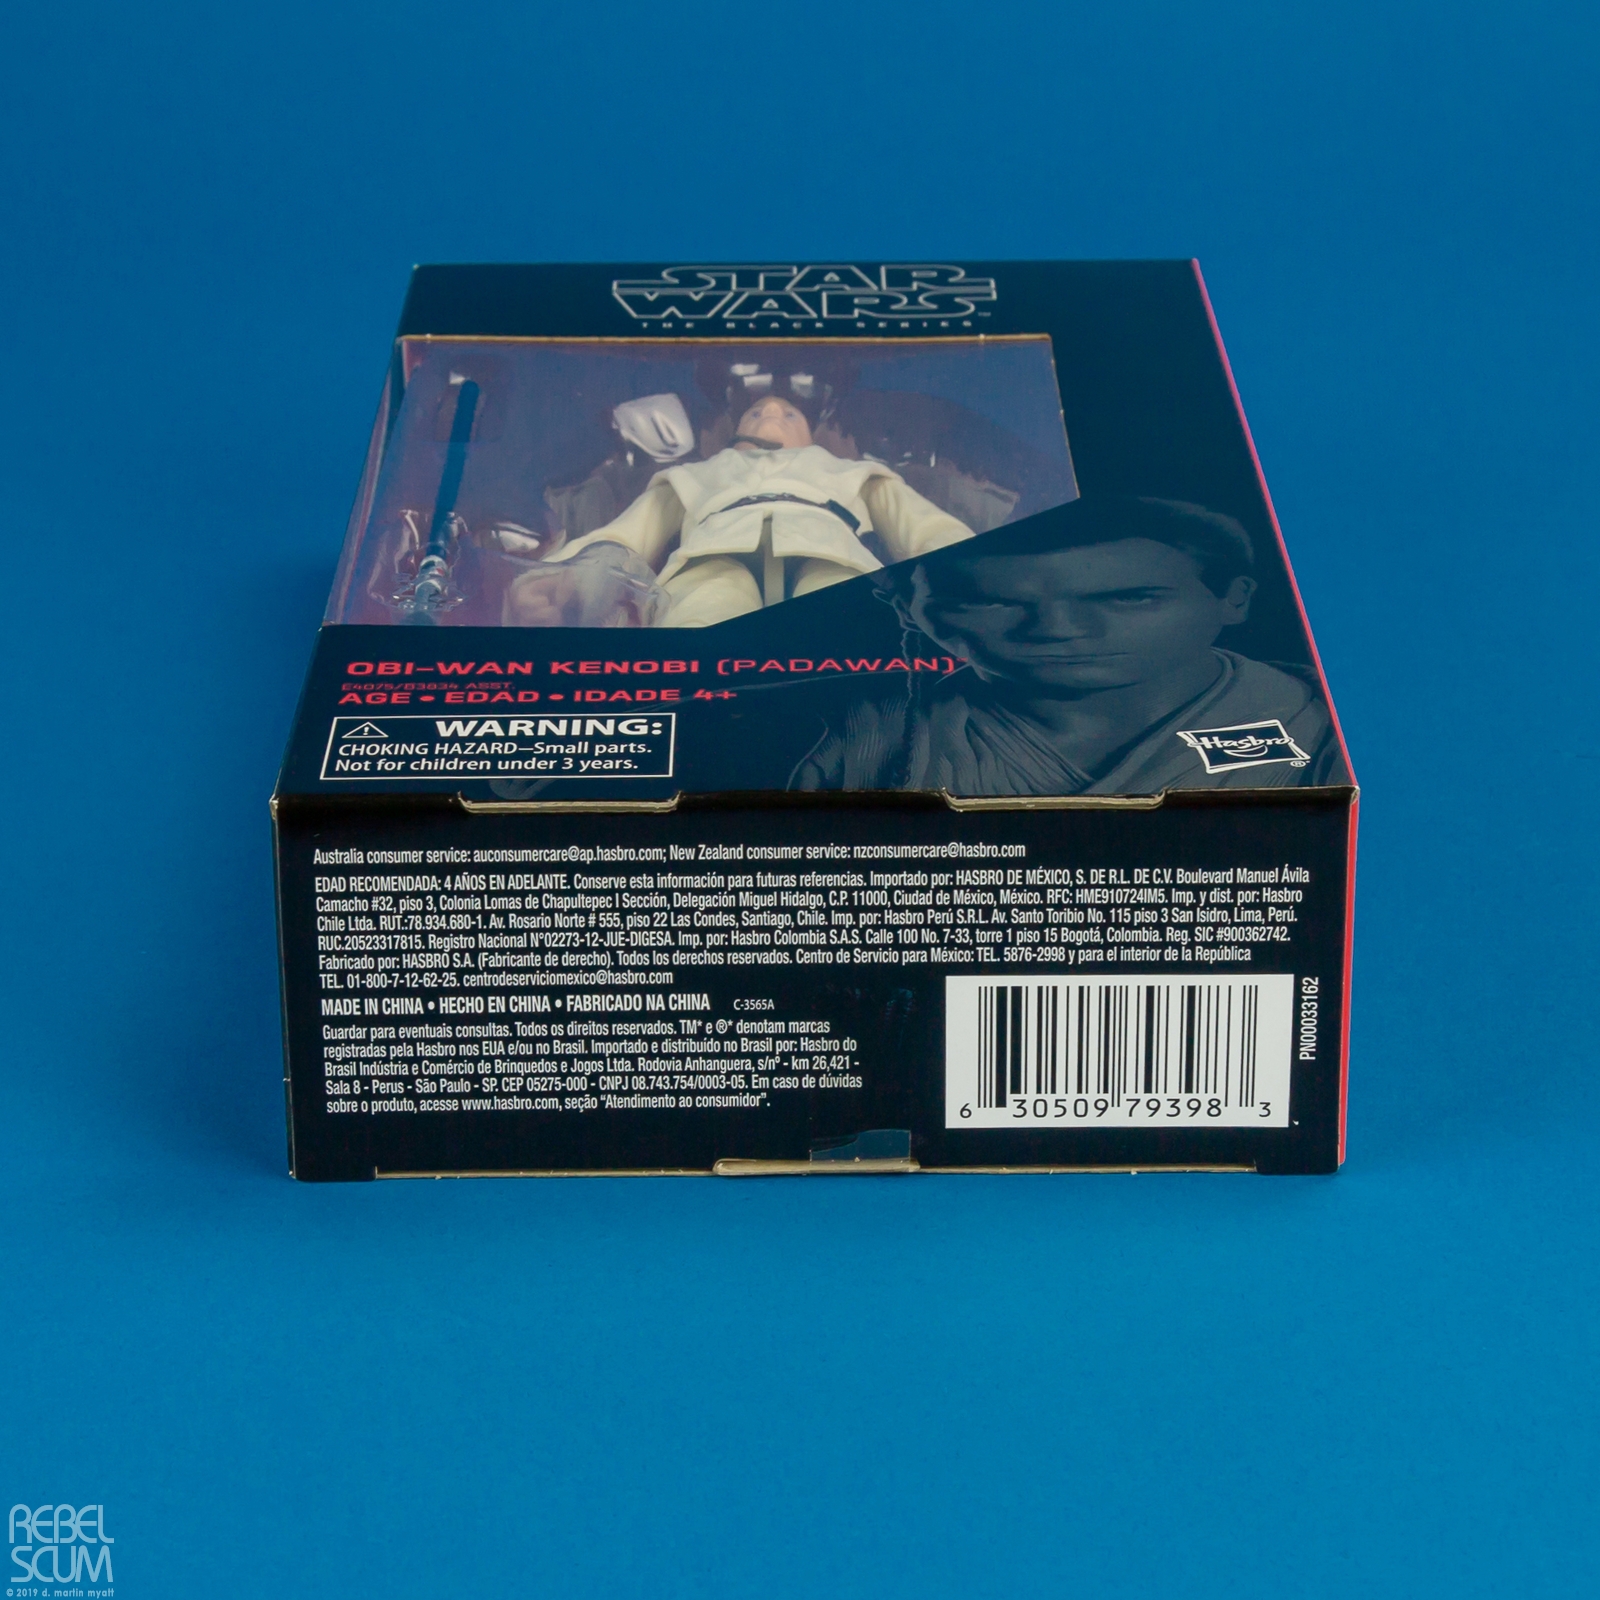 Obi-Wan-Kenobi-Padawan-The-Black-Series-E4075-B3834-020.jpg